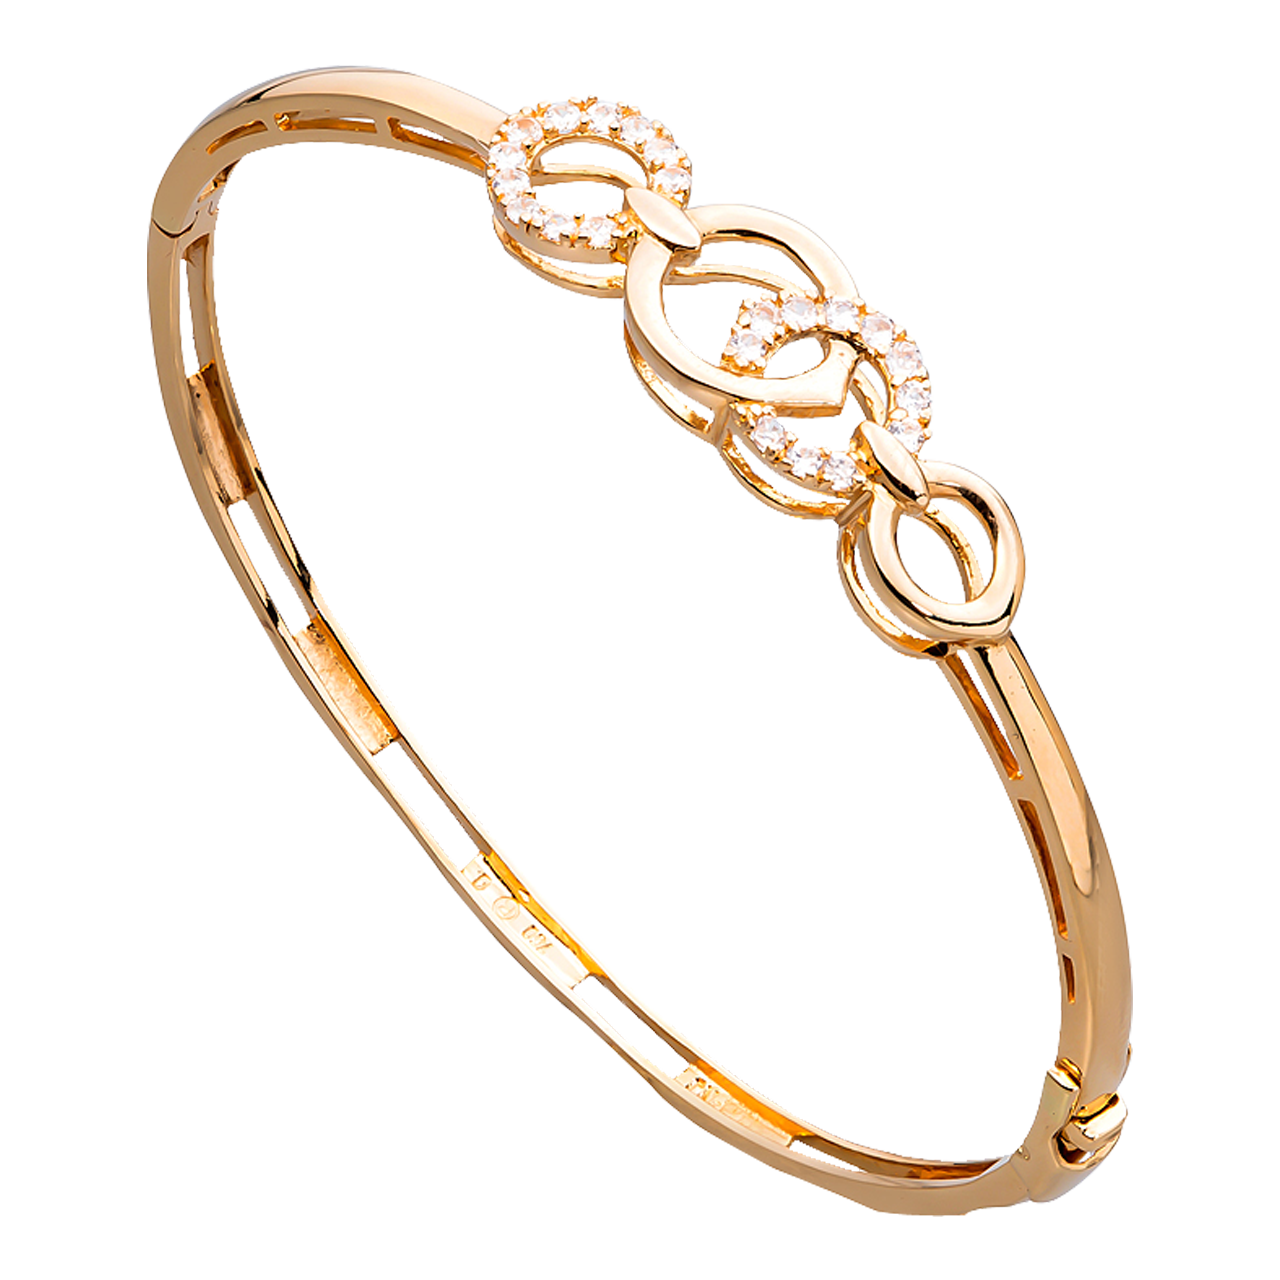 Vòng đeo tay vàng 999 được tạo ra với chất liệu vàng nguyên chất 999, là biểu tượng của sự giàu có và quyền lực. Với thiết kế tinh tế và đẳng cấp, vòng đeo tay vàng 999 chắc chắn sẽ khiến cho khách hàng cảm thấy hài lòng và tự tin hơn trong cuộc sống.